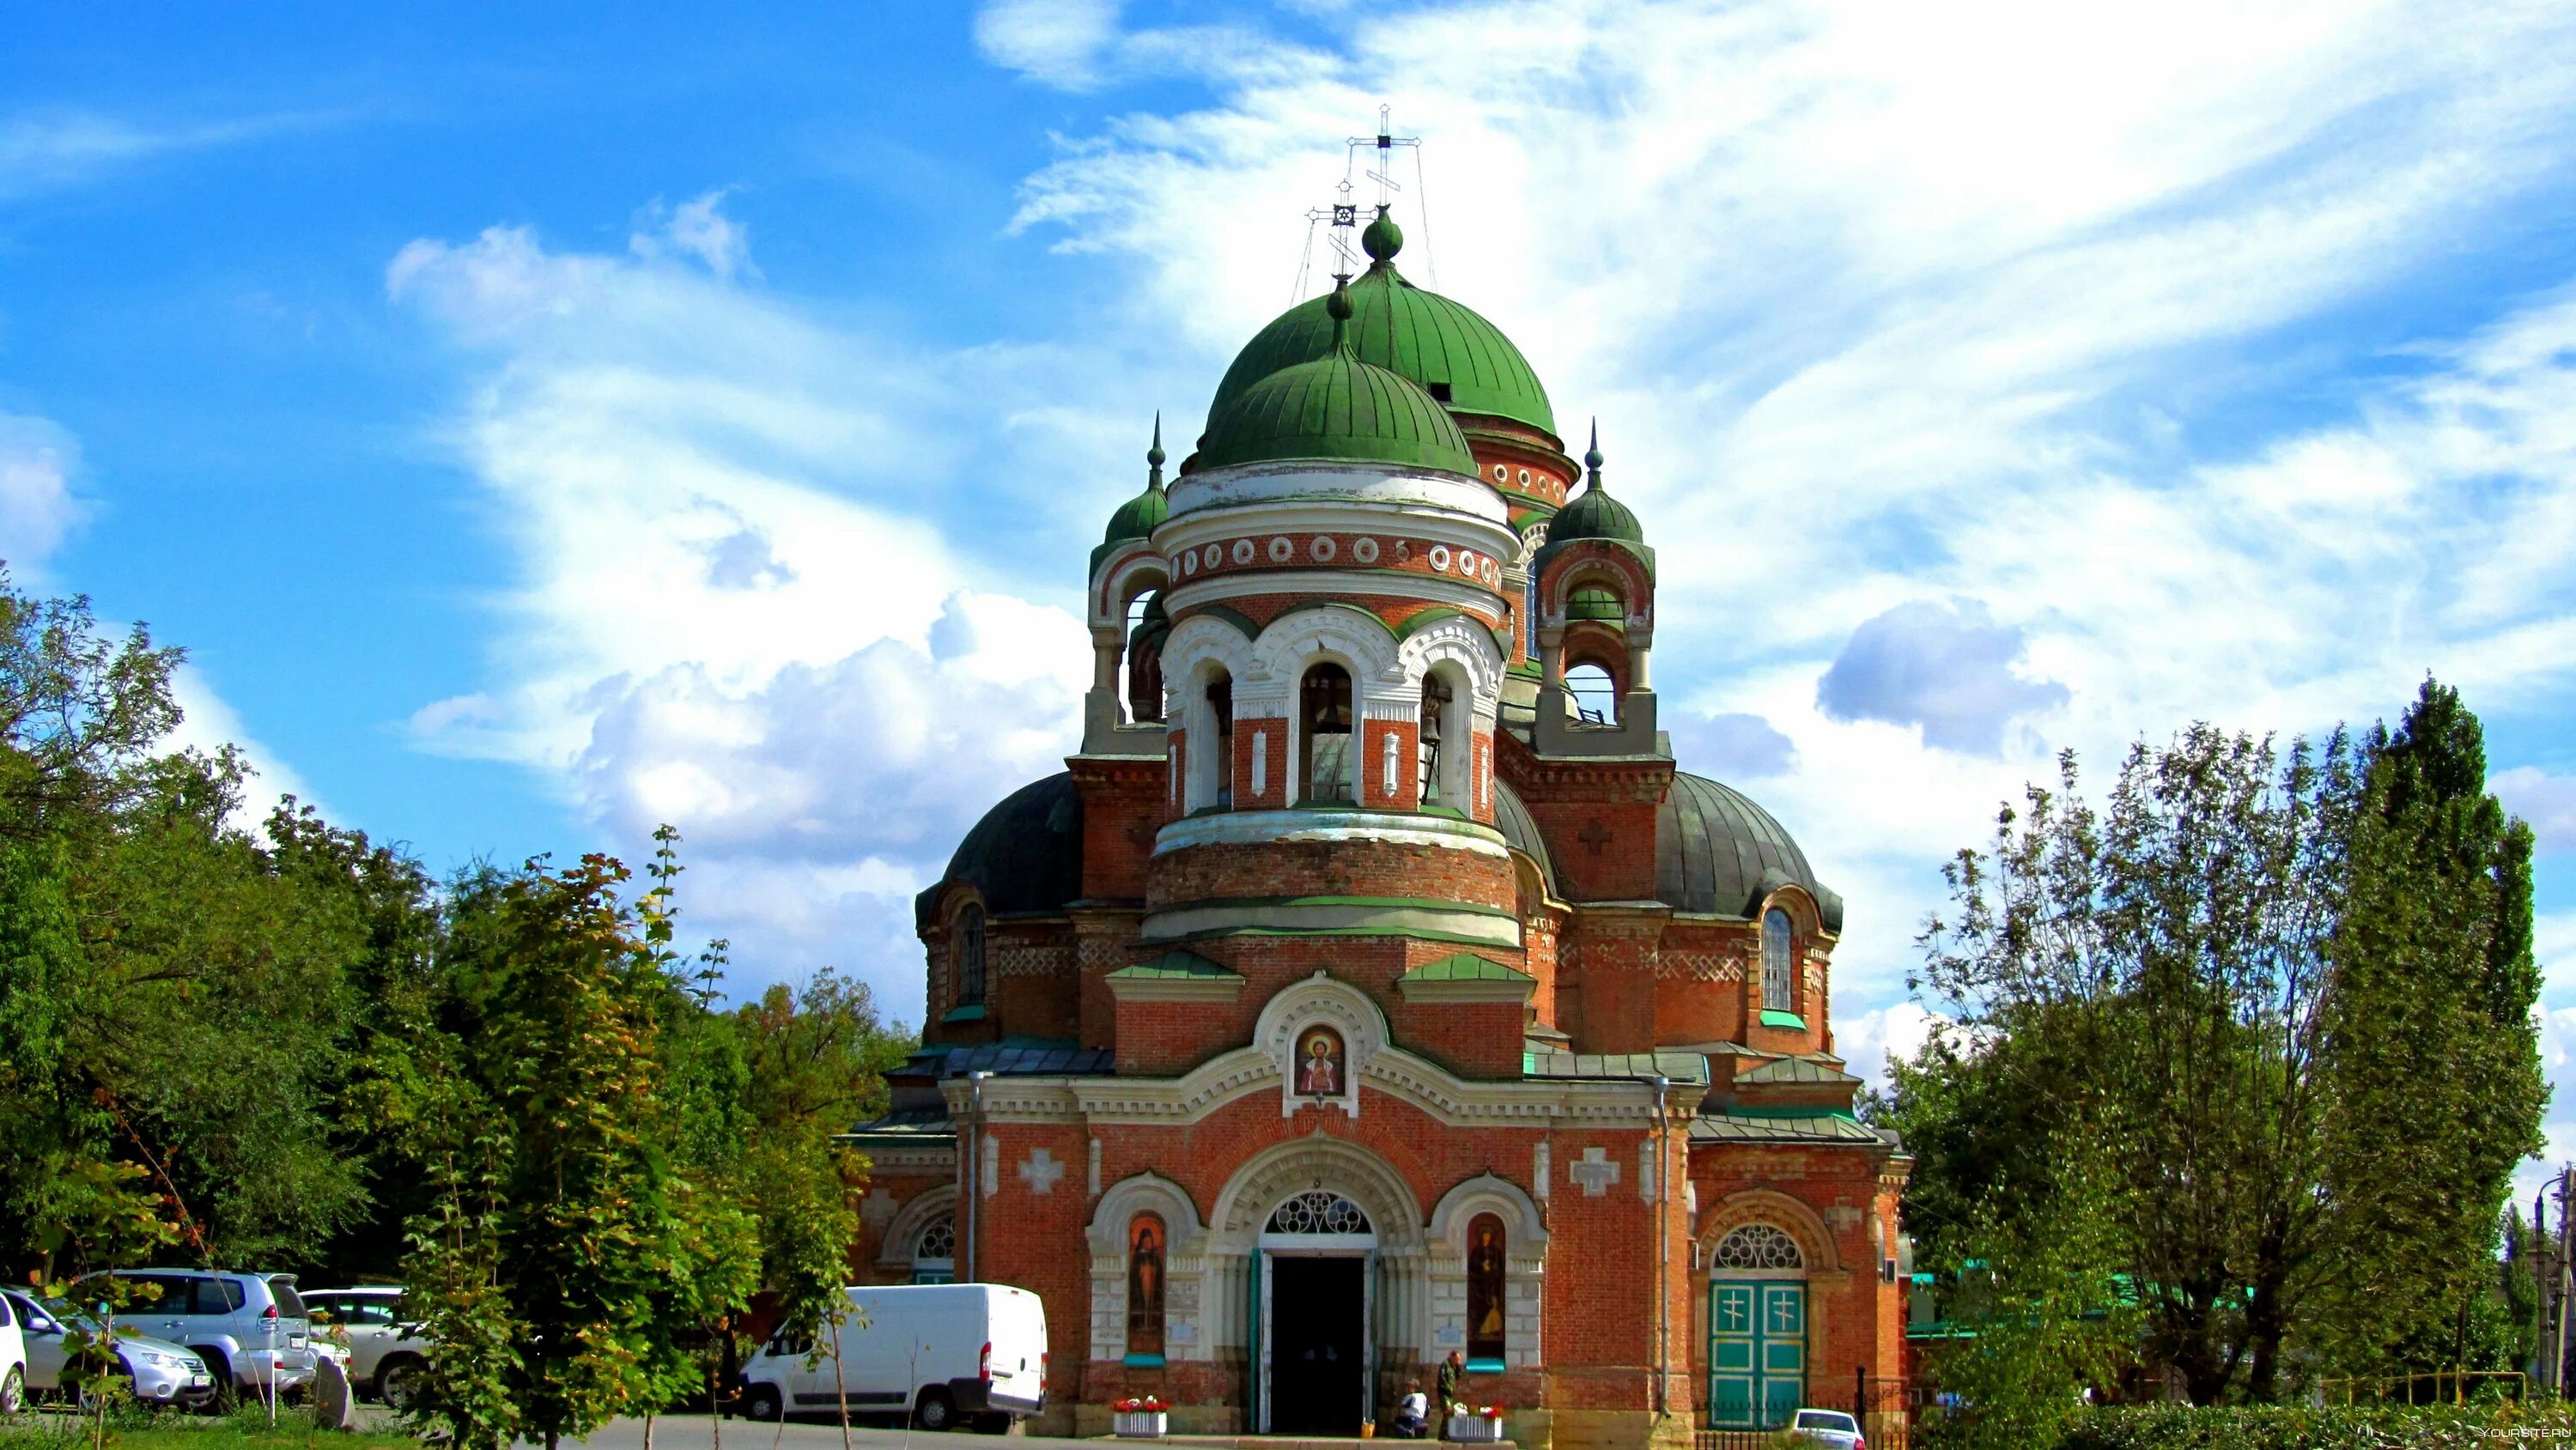 Культурно исторические достопримечательности ростовской области